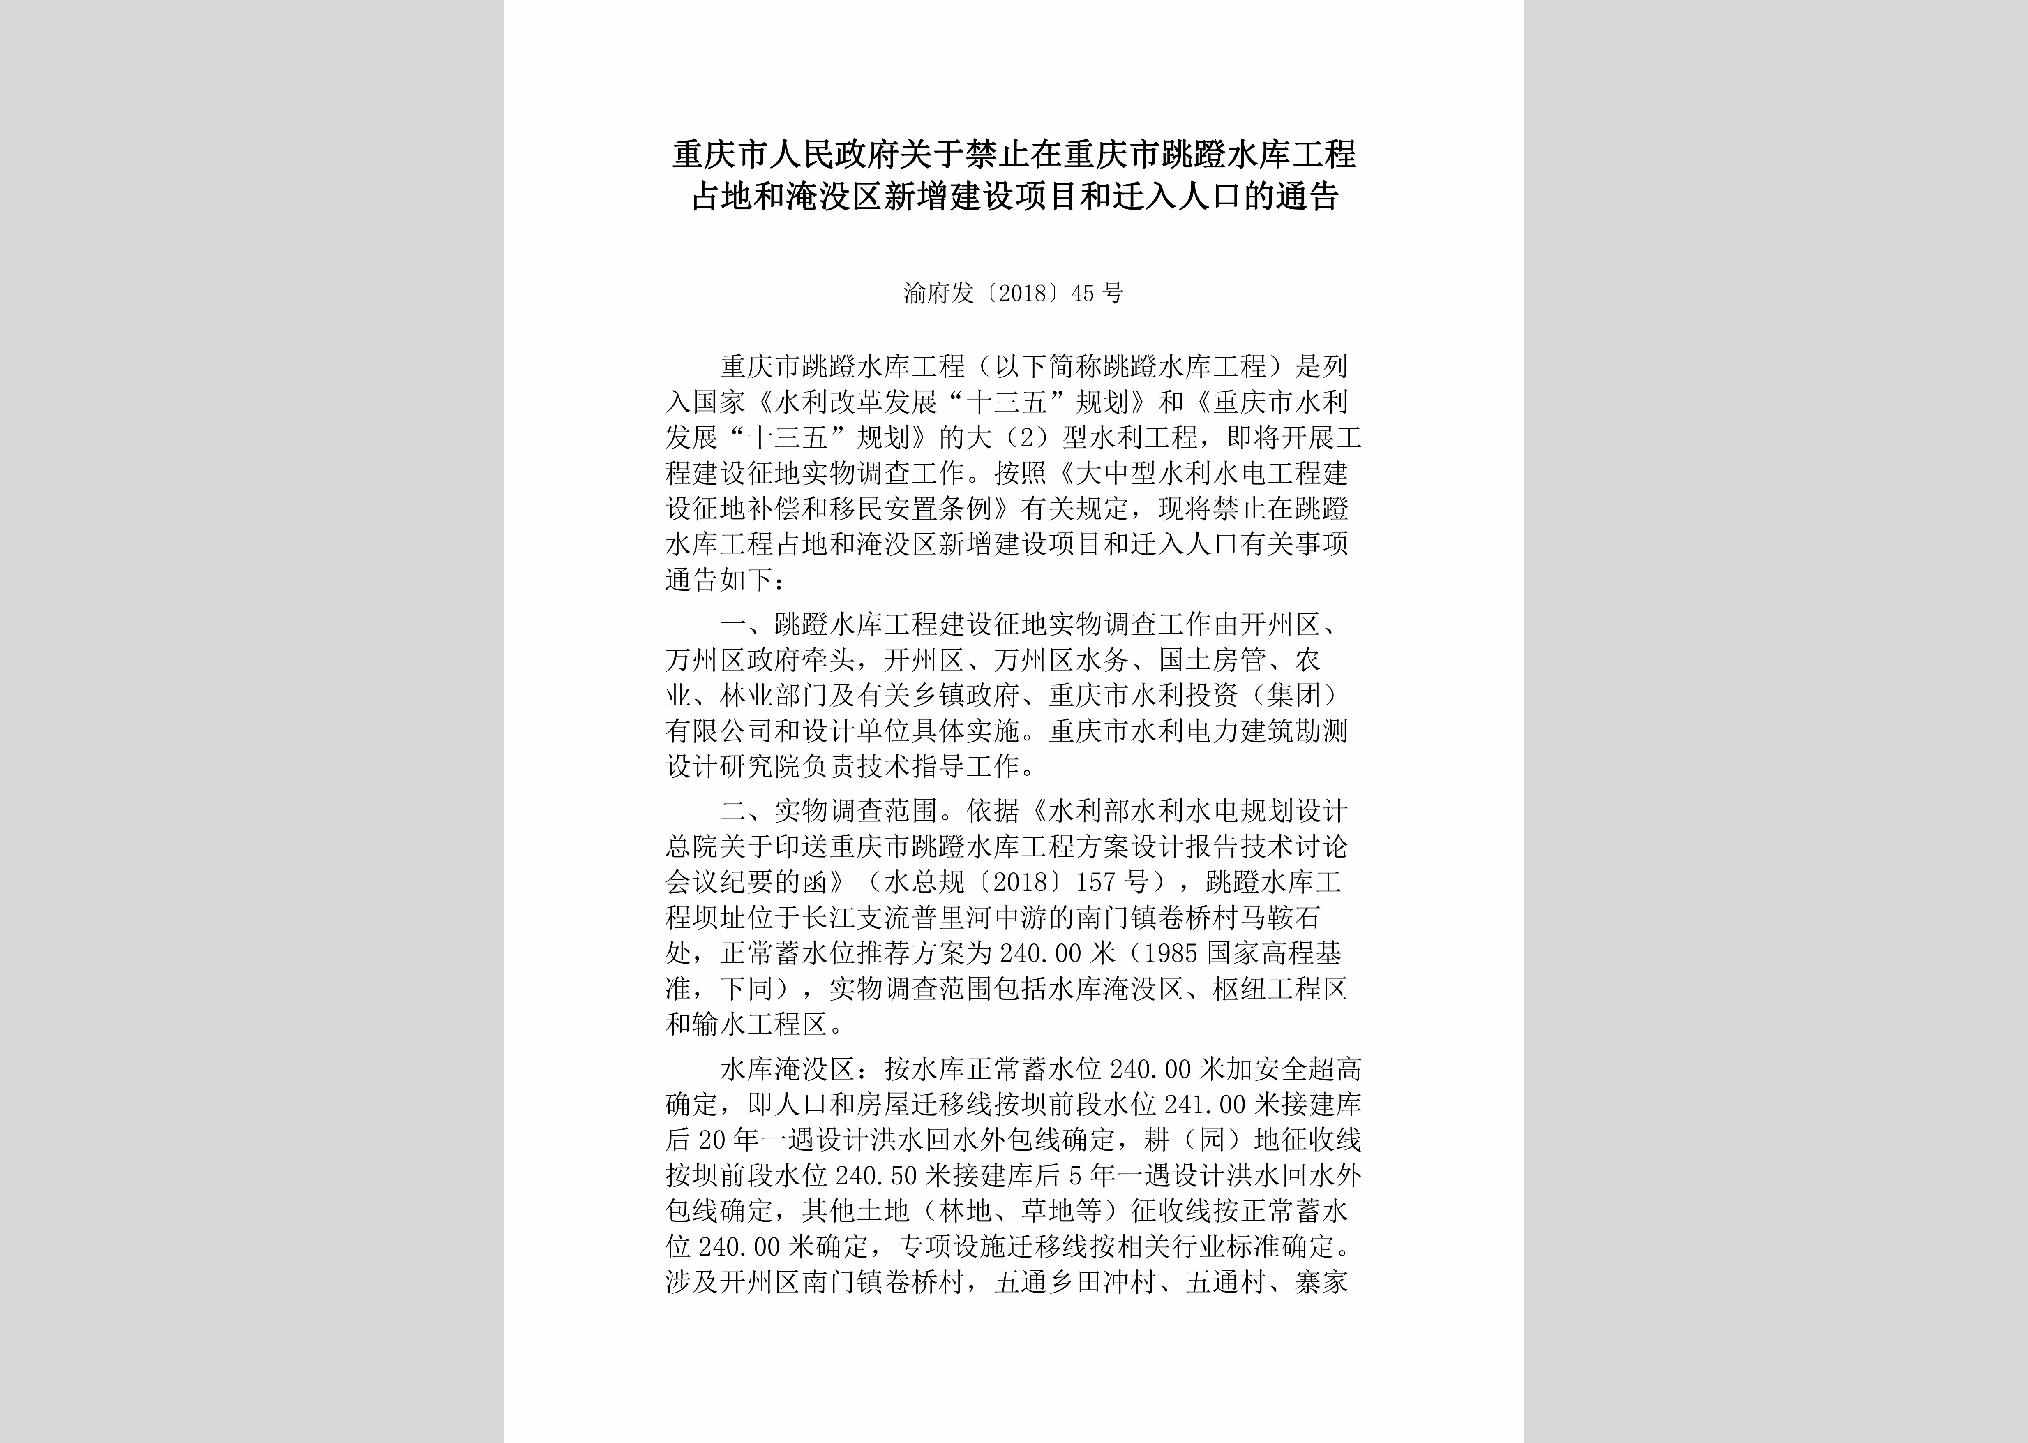 渝府发[2018]45号：重庆市人民政府关于禁止在重庆市跳蹬水库工程占地和淹没区新增建设项目和迁入人口的通告